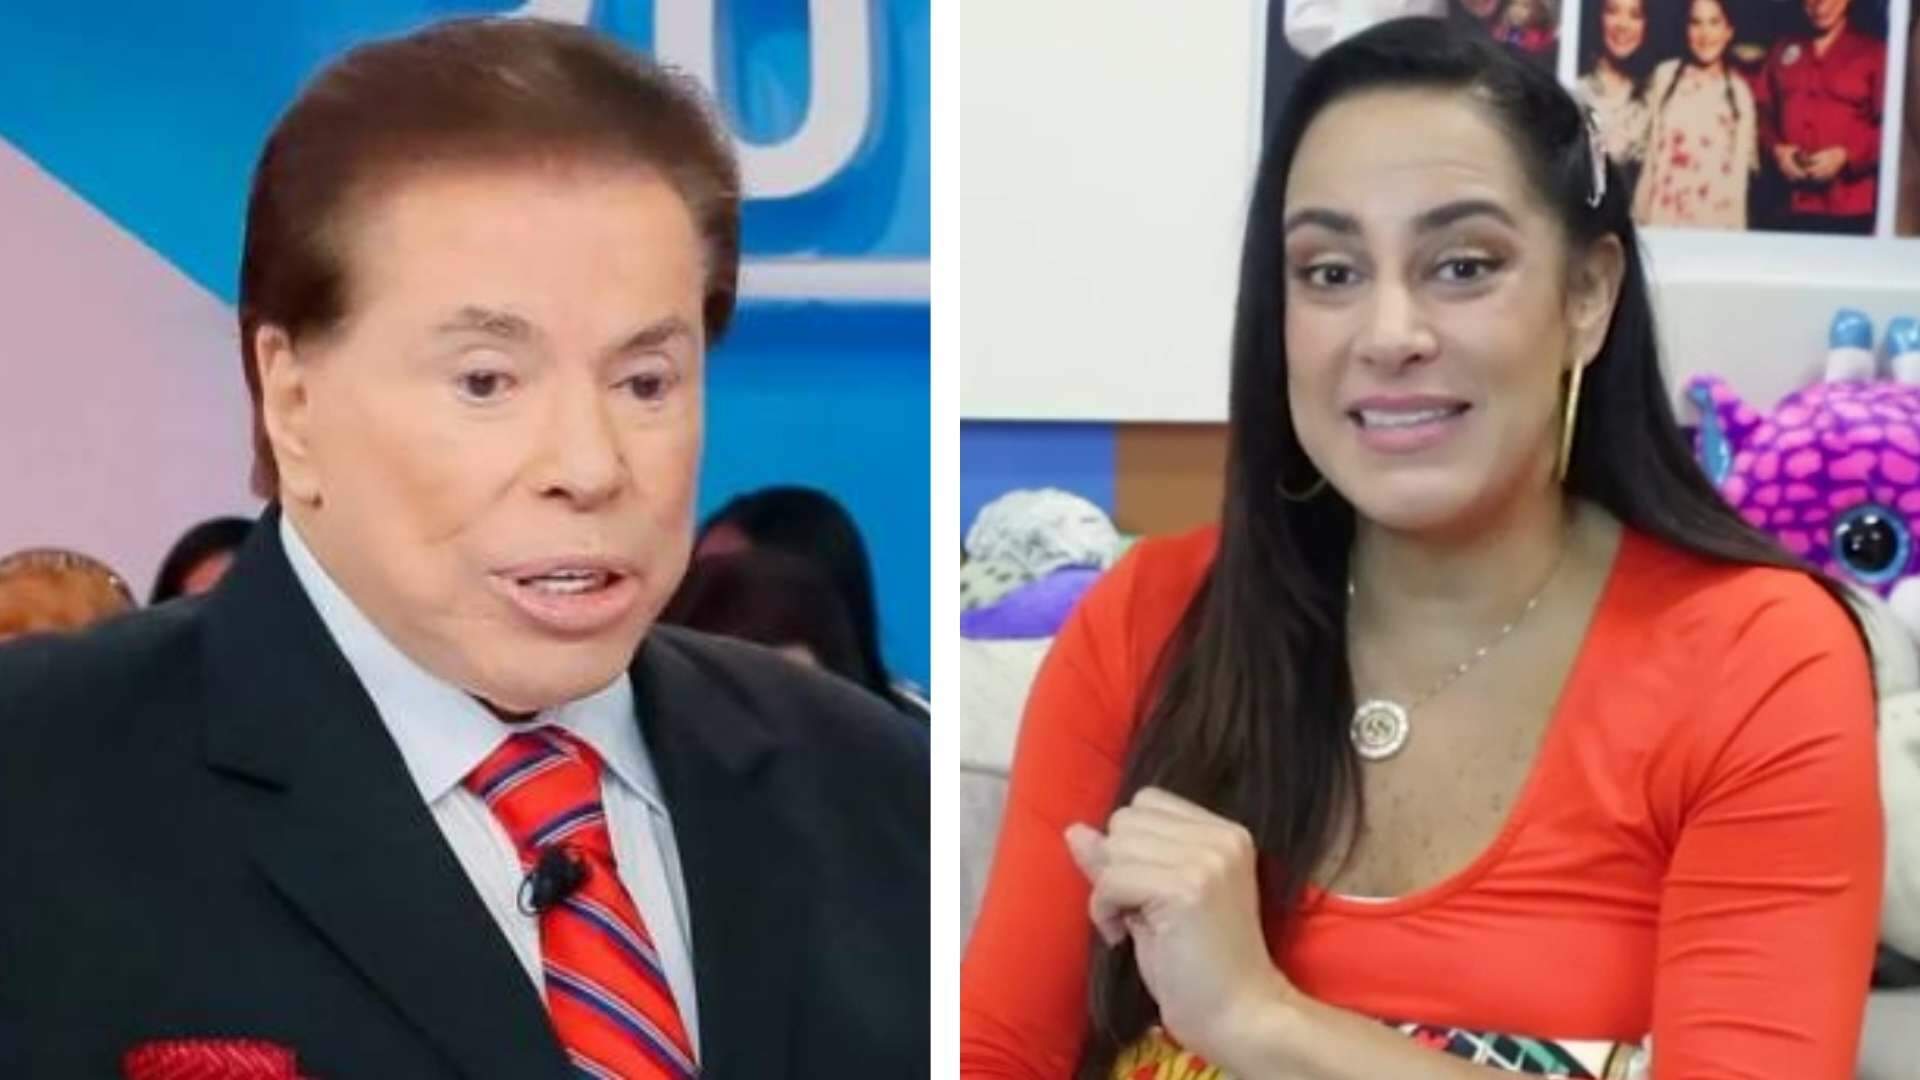 Silvia Abravanel expõe o que ninguém sabia sobre Silvio Santos: “Sempre demitindo as pessoas” - Metropolitana FM